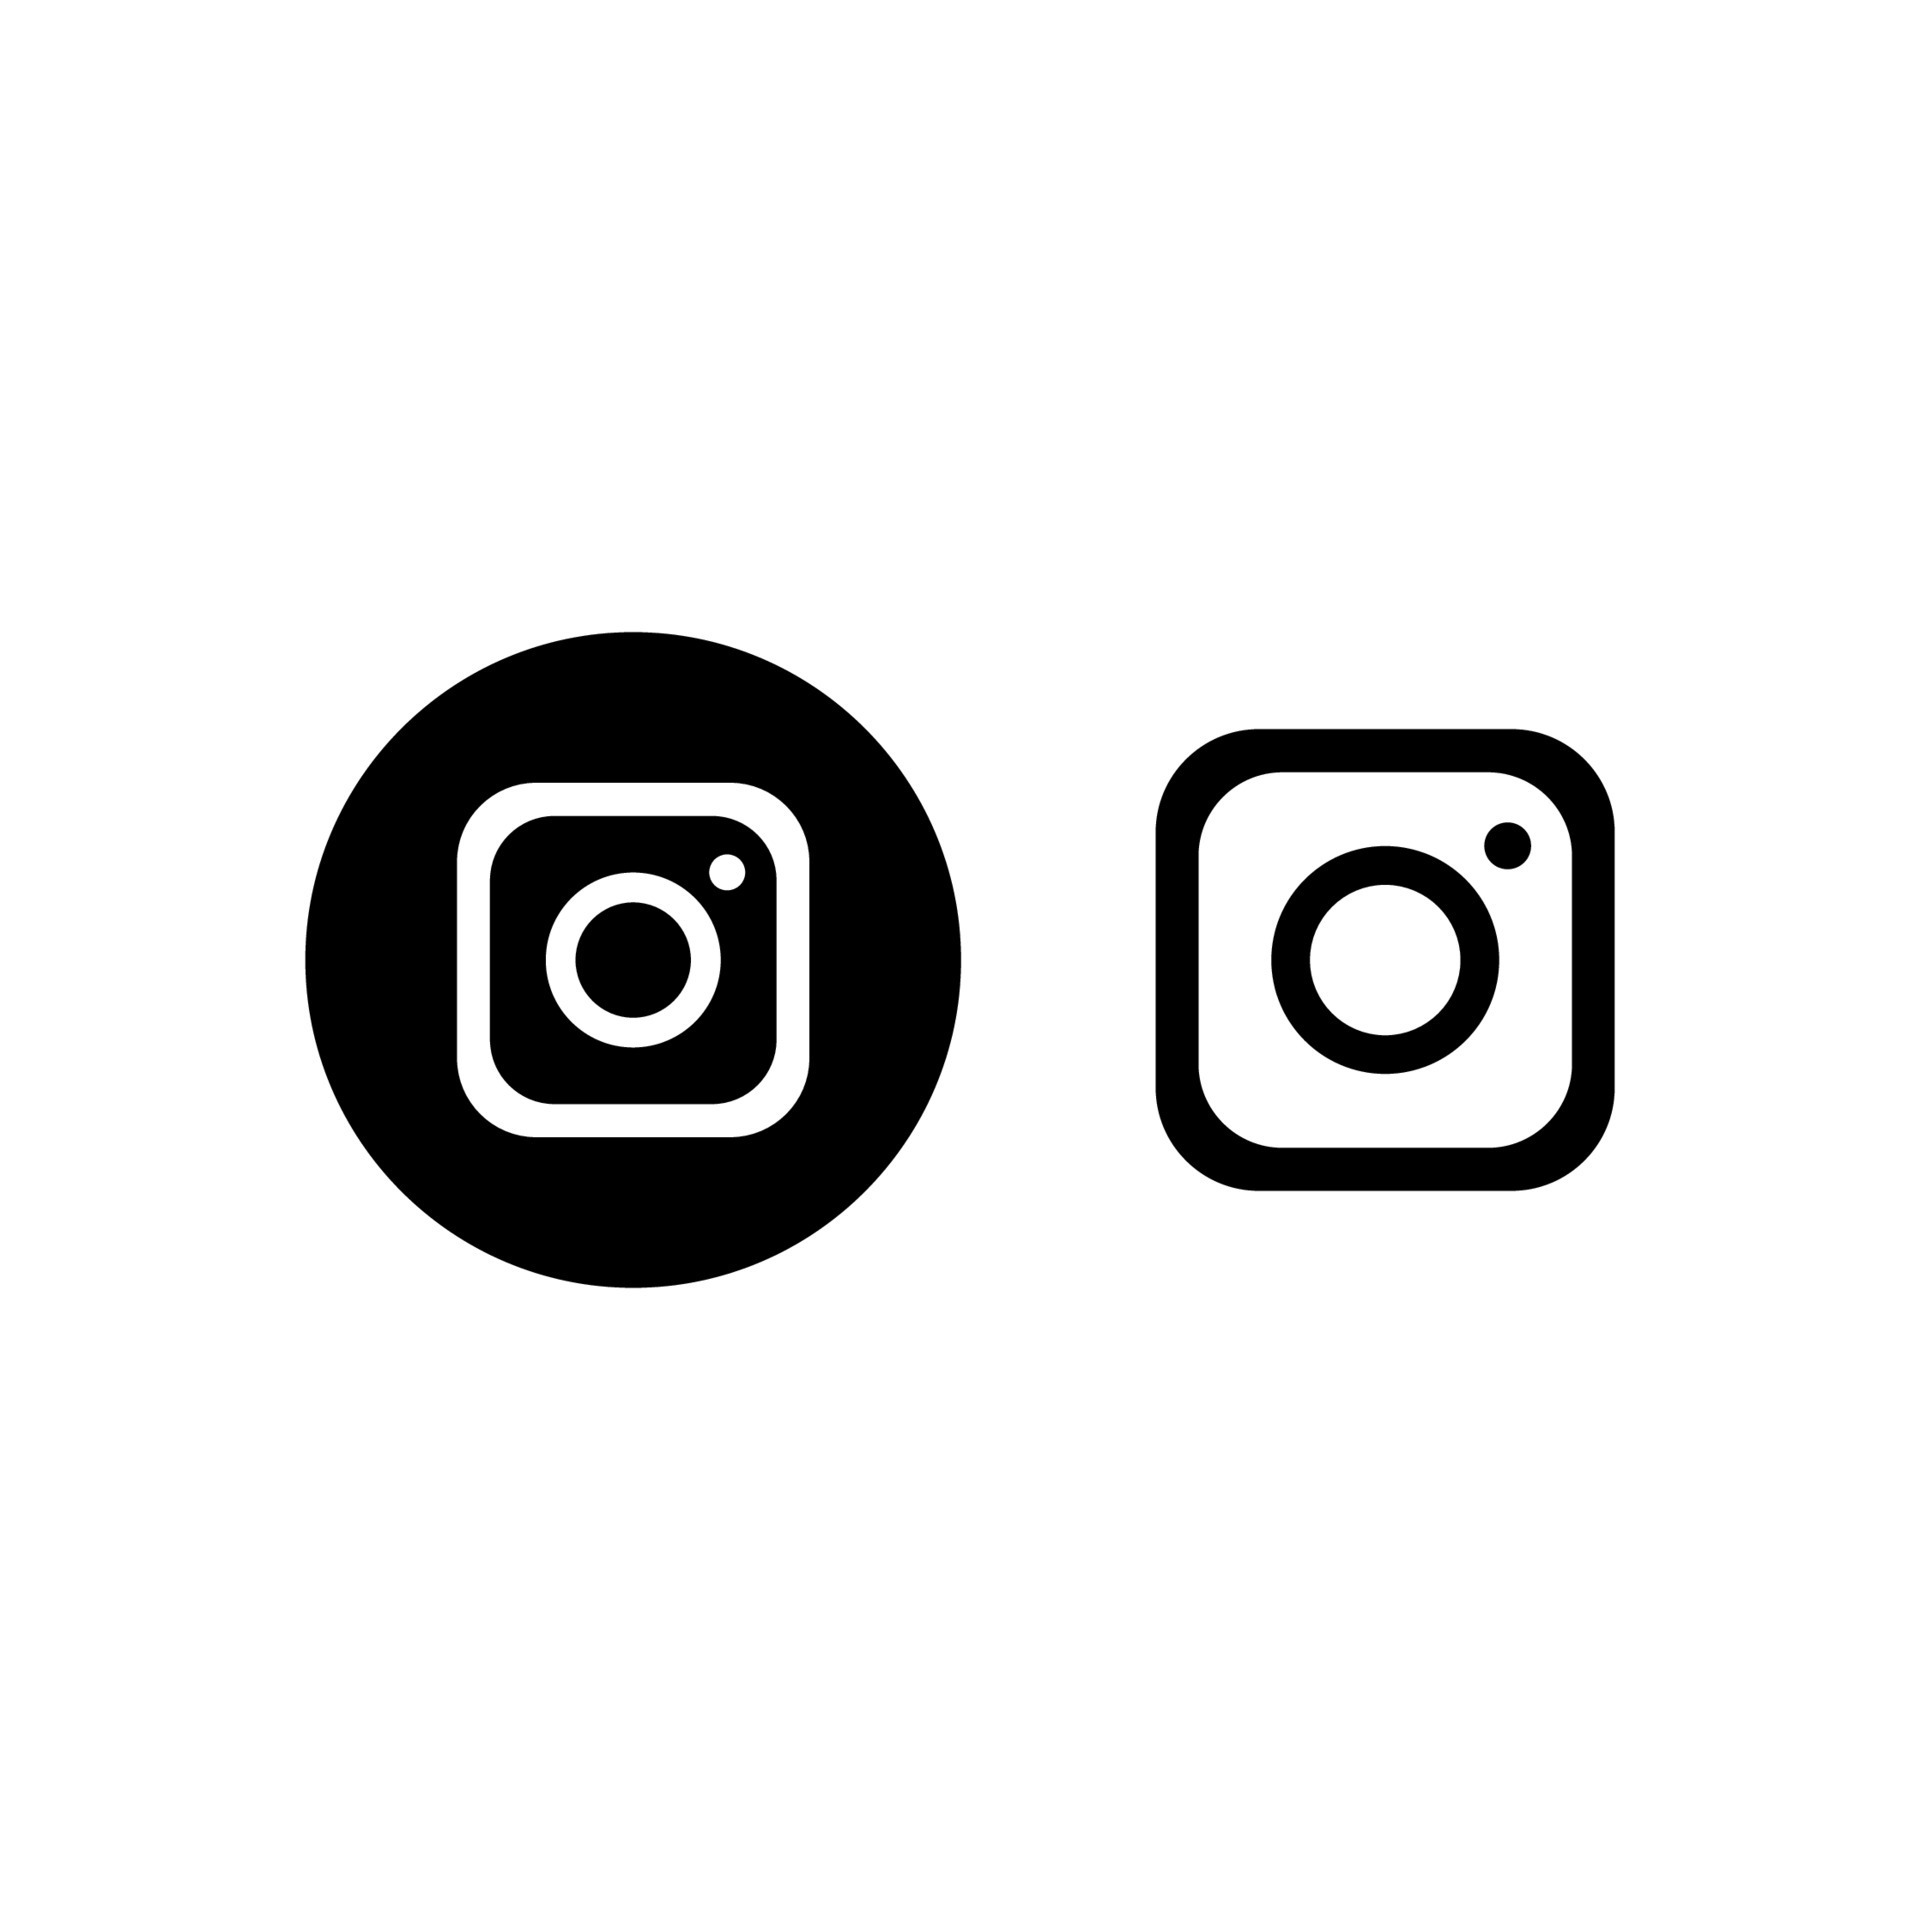 Instagram logo vector 21818094 Vector Art at Vecteezy